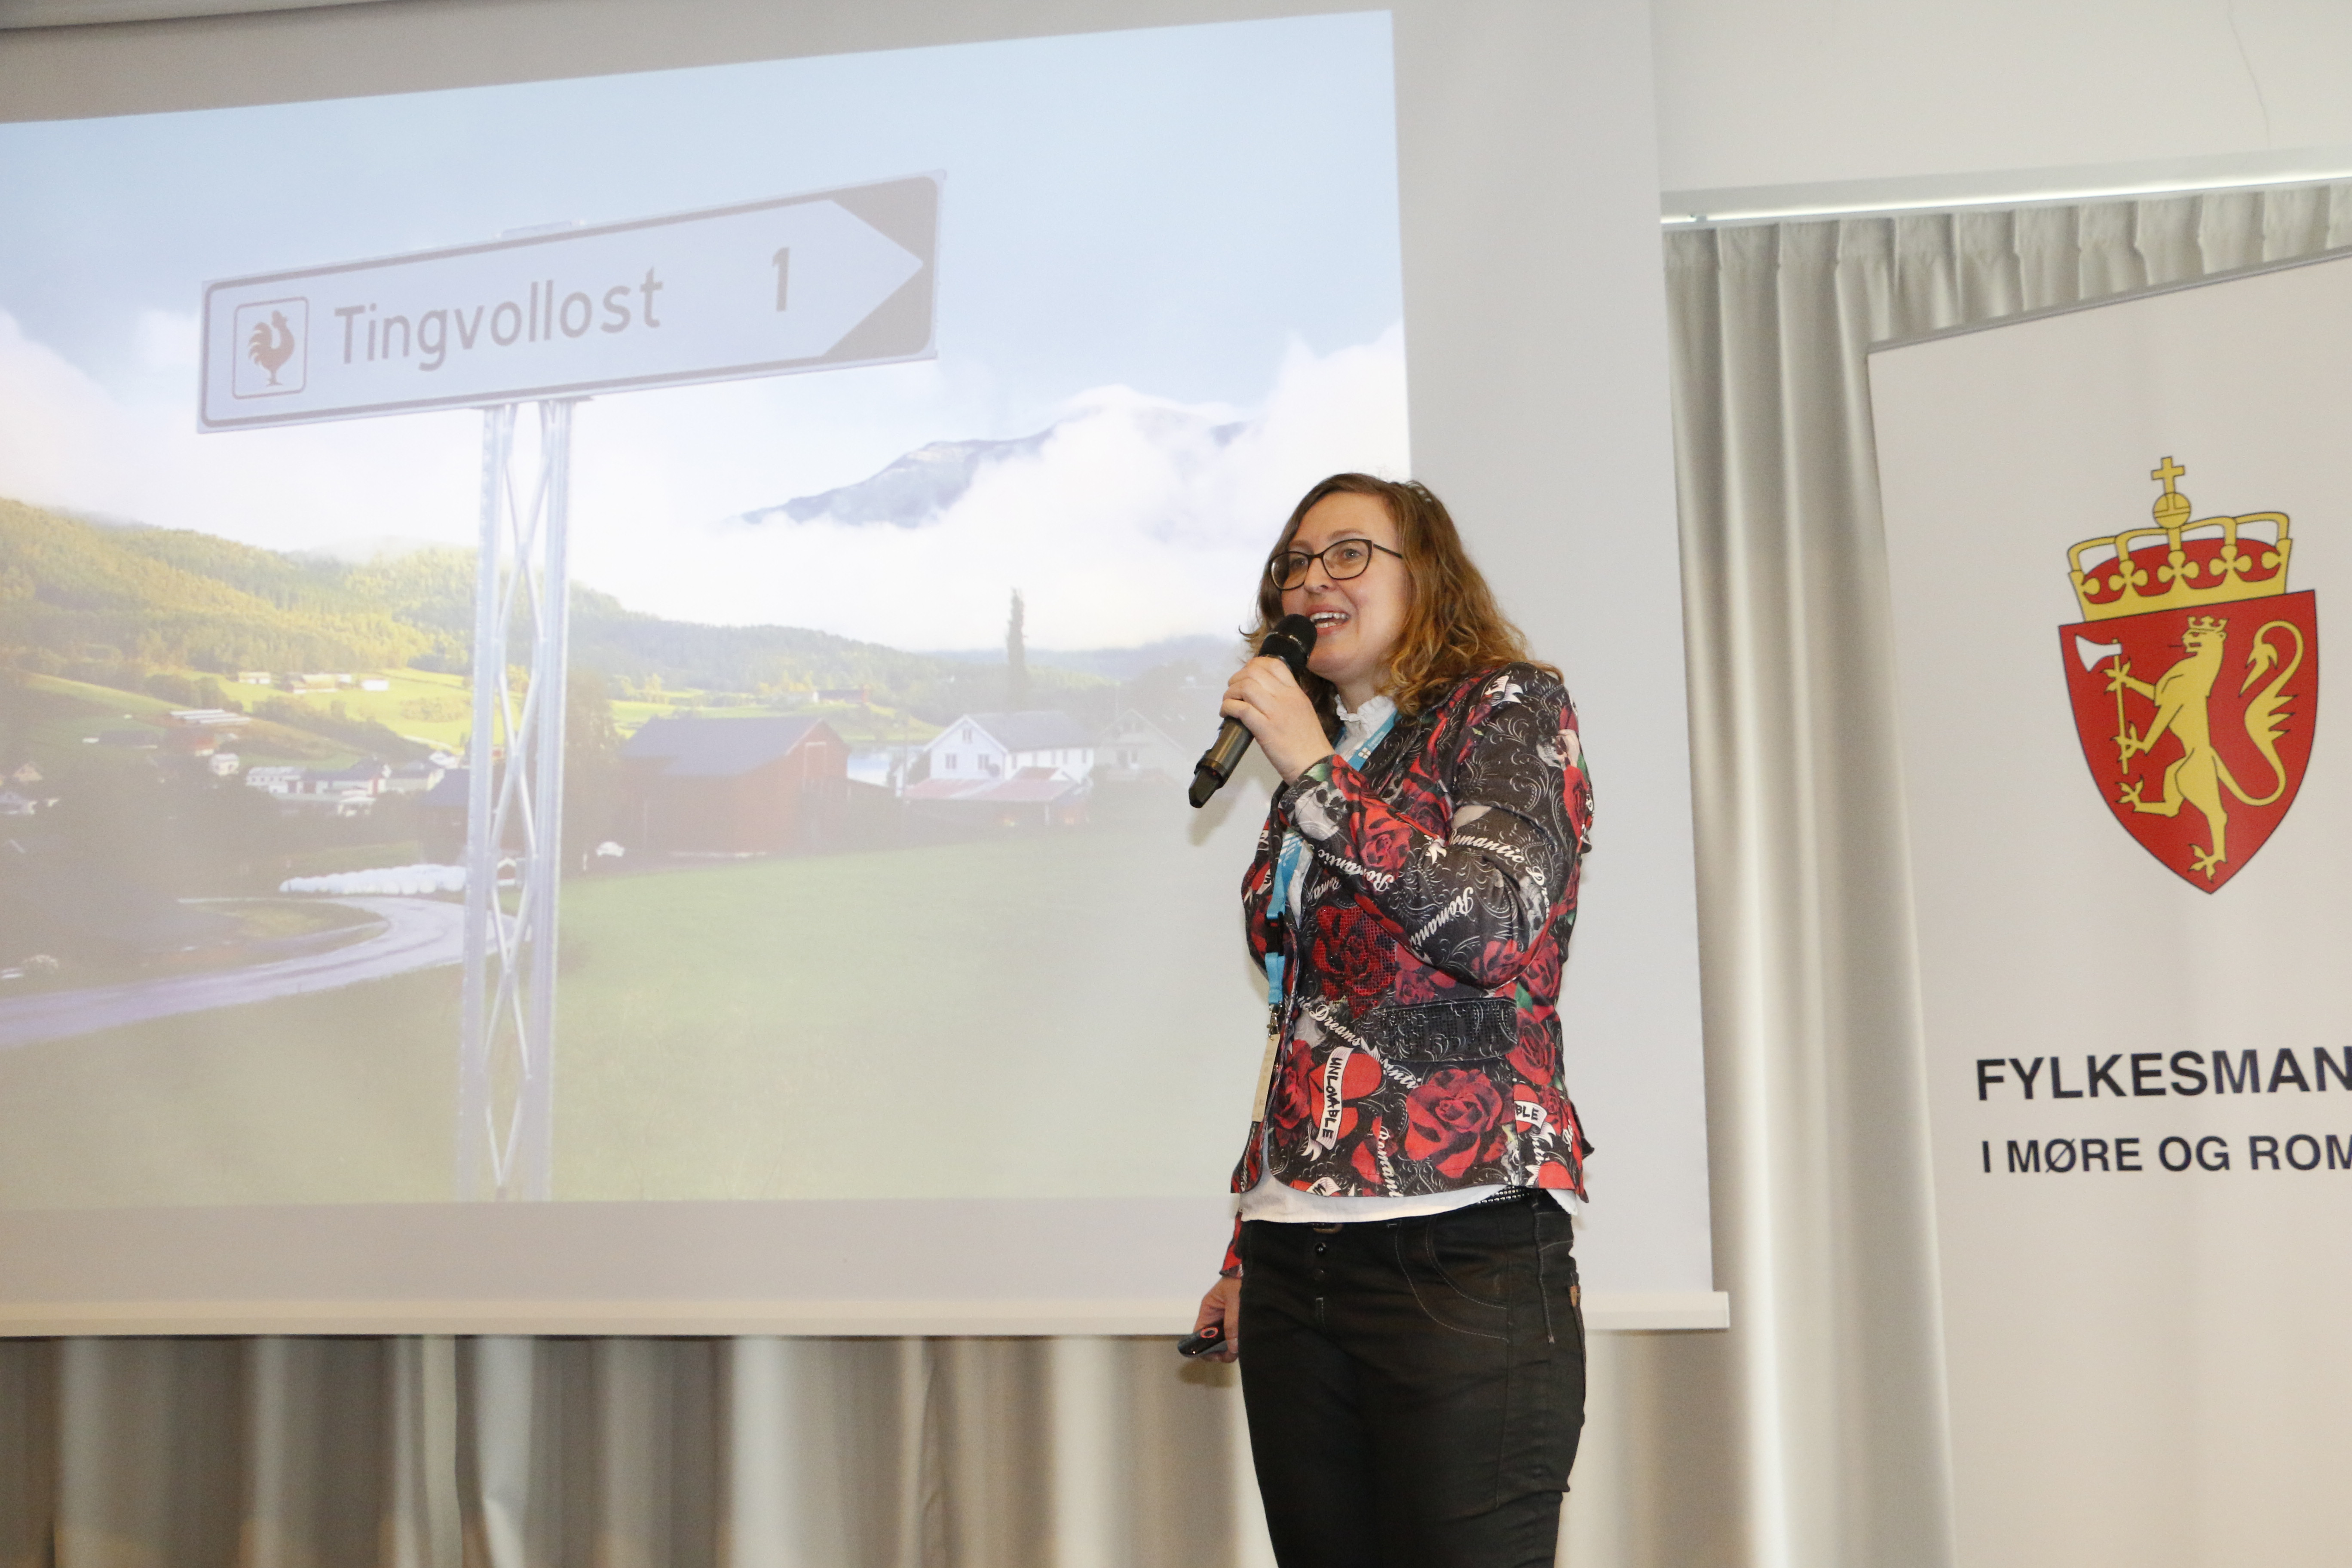 Kristin Waagen i Tingvollost fortalte om å kommunisere i markedet når ein ikkje har produkt å selje. Vi fekk også høyre om dei strategiske markedsvala dei gjorde da dei starta opp Tingvollost.